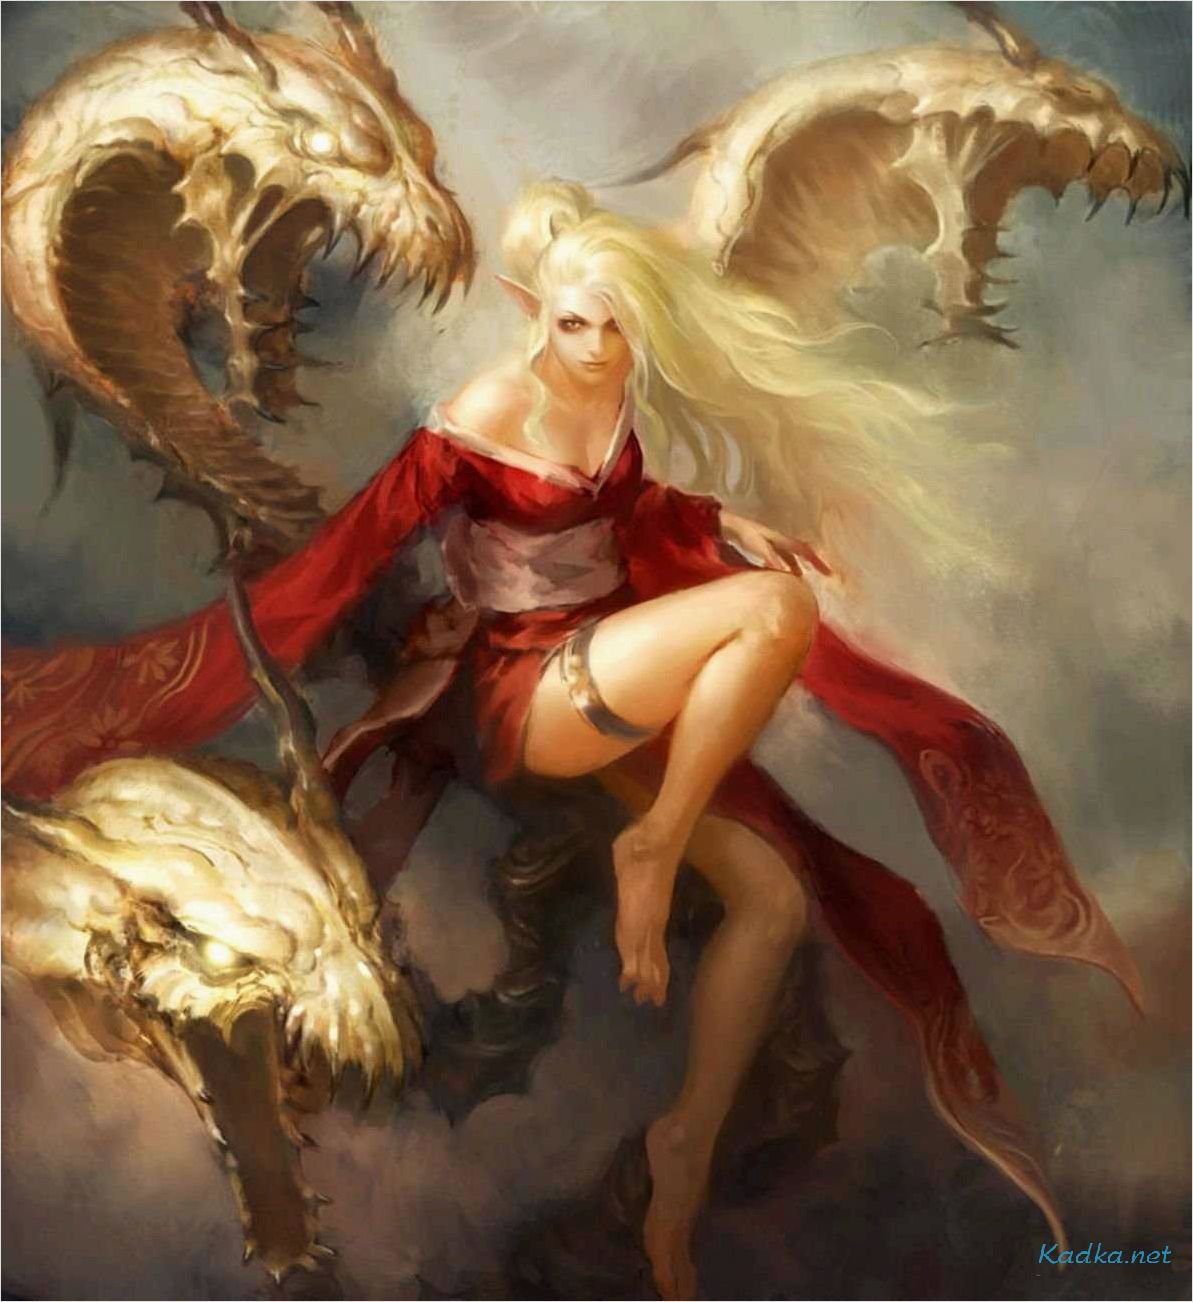 Женщина дракон арт: удивительные произведения искусства с образом женщины-дракона